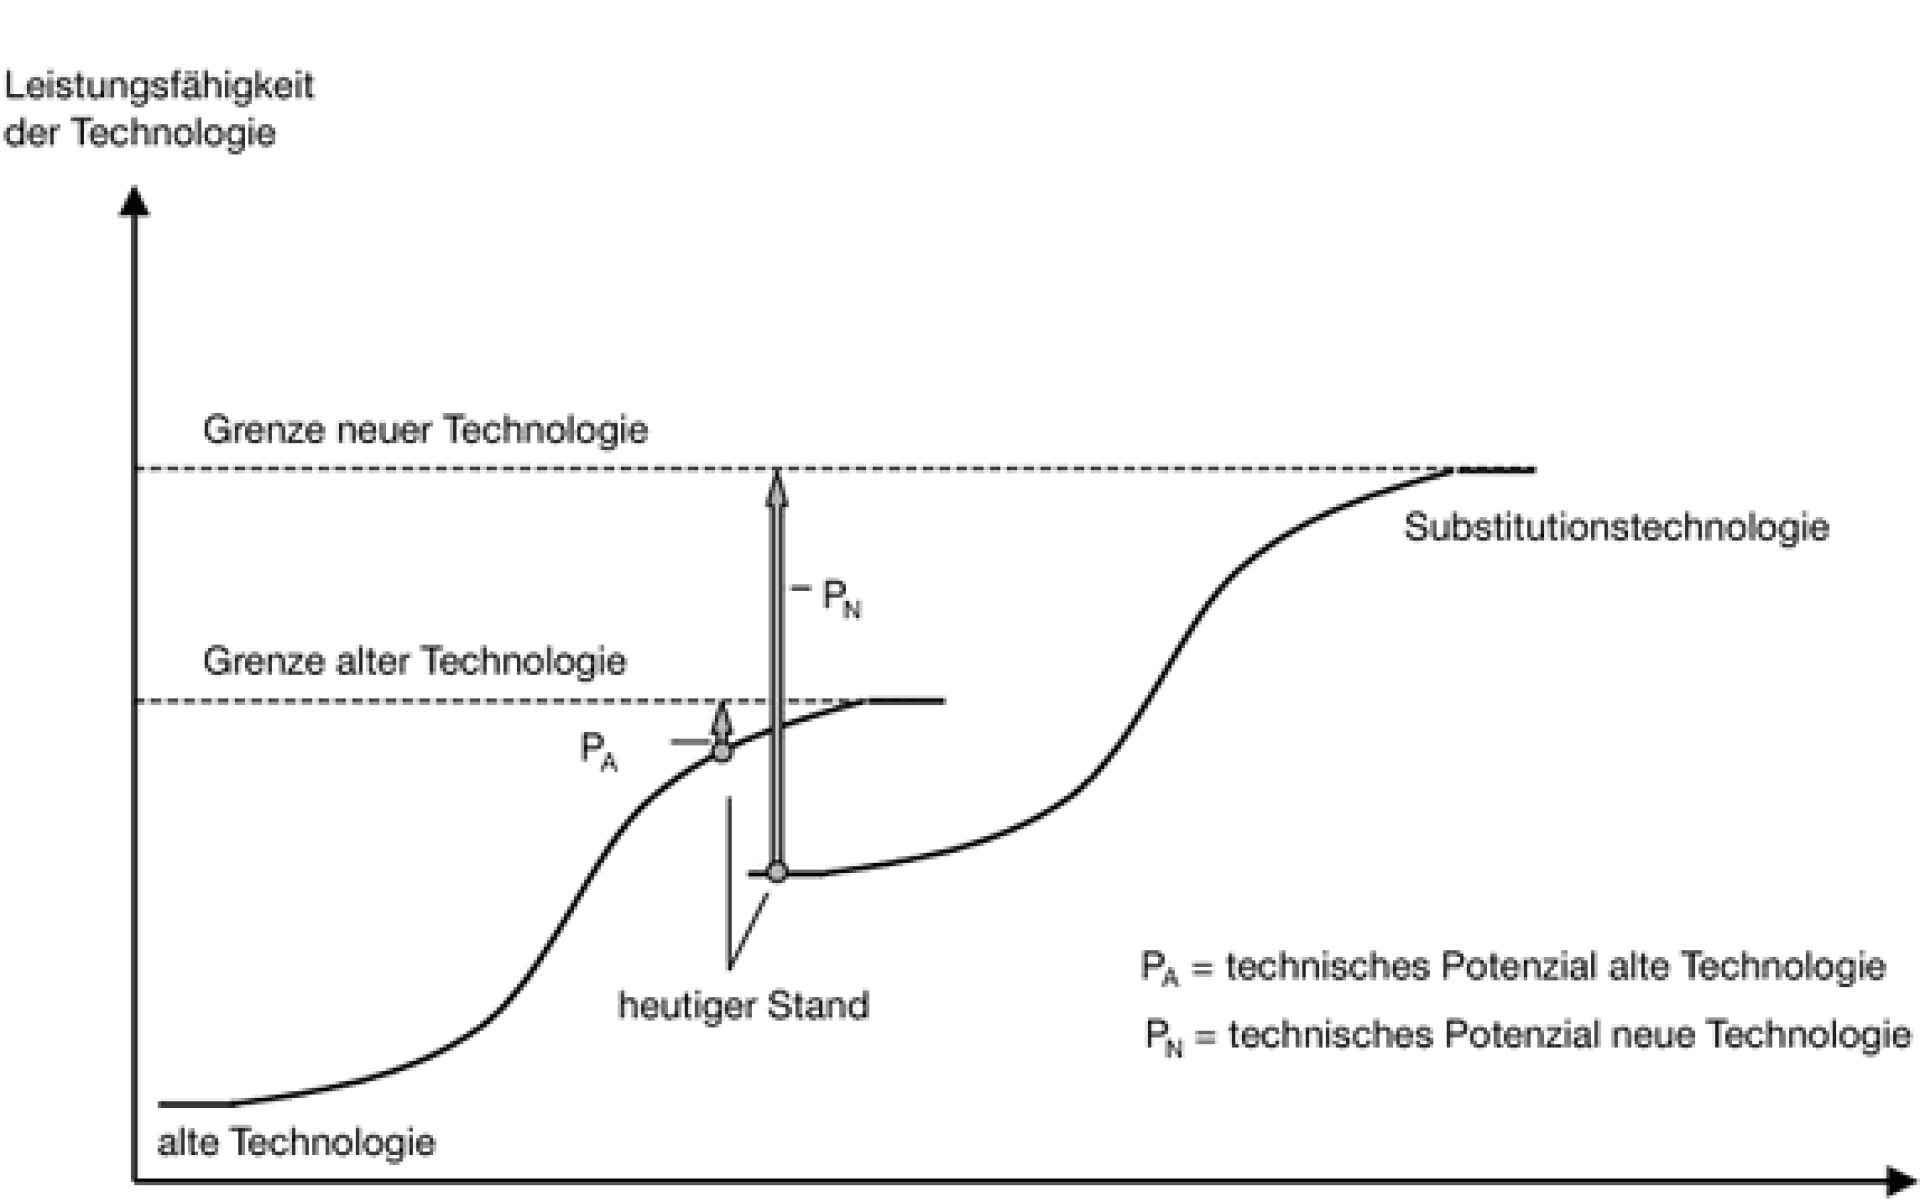 Das Diagramm zeigt das S-Kurven-Konzept. Auf der X-Achse ist der Aufwand und auf der Y-Achse ist die Leistungsfähigkeit einer Technologie. Dabei zeigt sich, die Grenze alter Technologien ist deutlich weiter unten als die Grenze neuer Technologien.